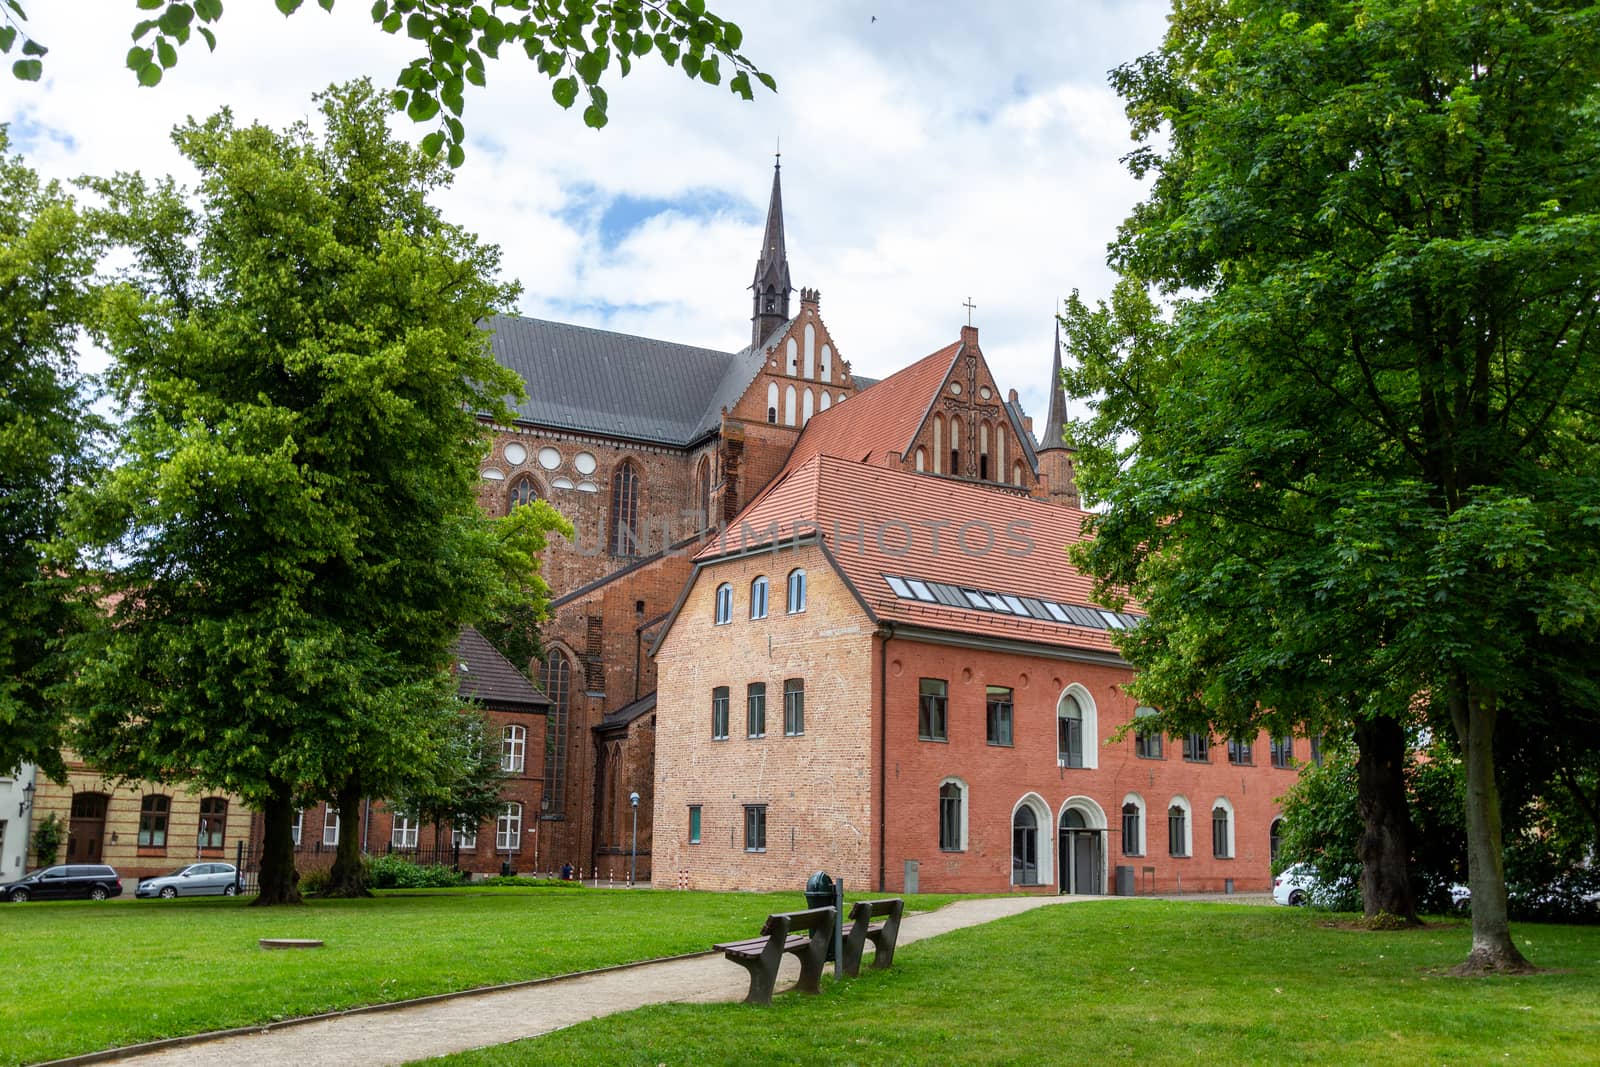 Church Saint Georgen in Hanseatic city Wismar by reinerc